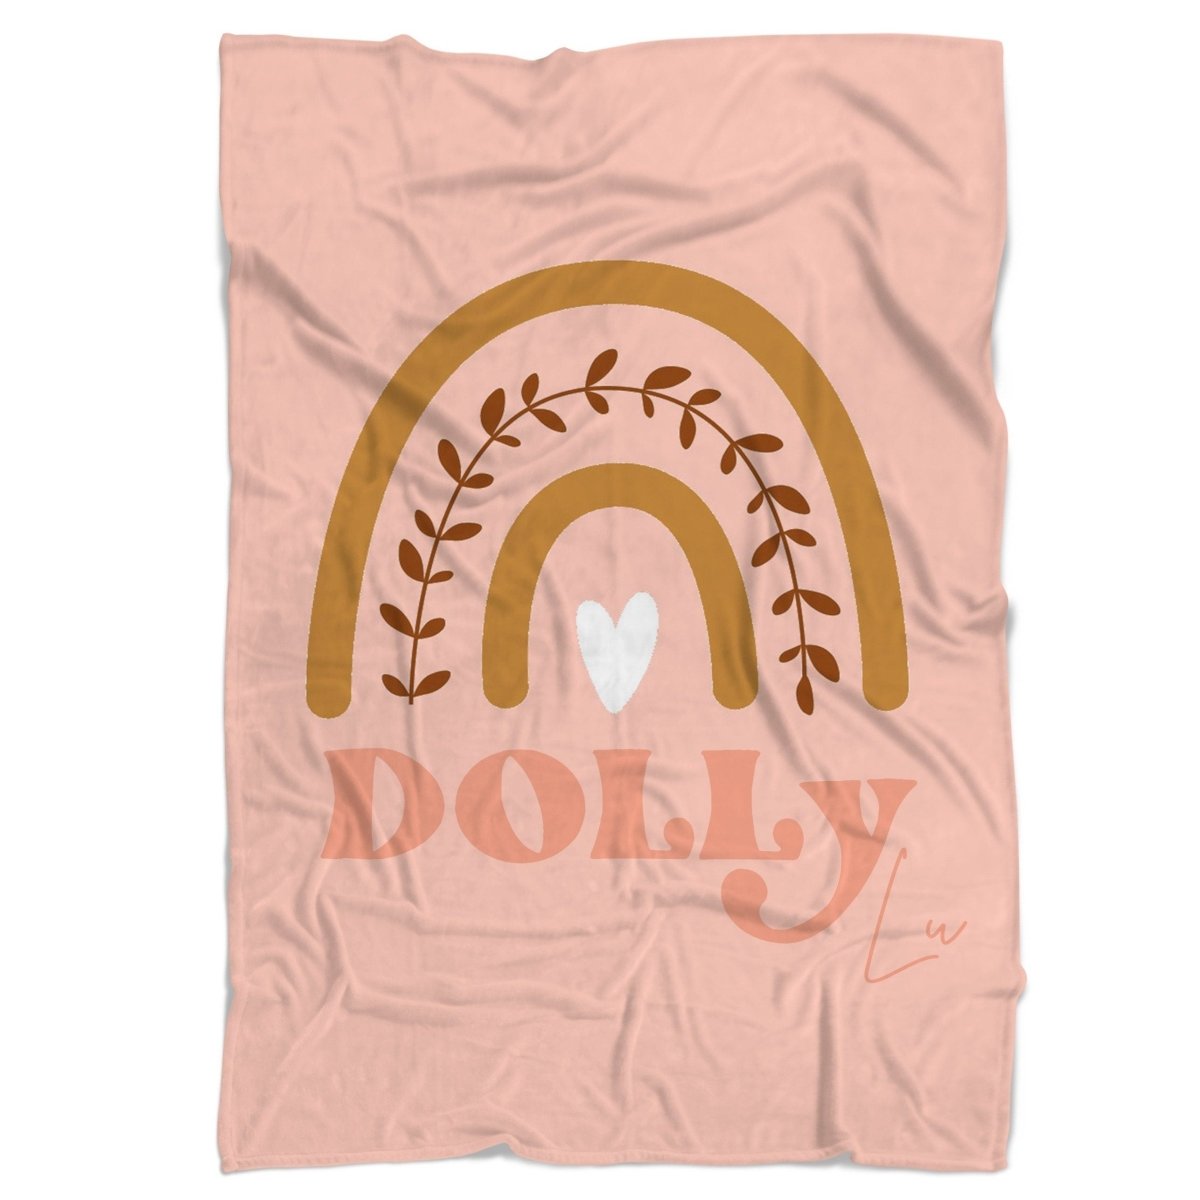 Boho Sunset Personalized Minky Blanket - Boho Sunset, gender_girl, Personalized_Yes